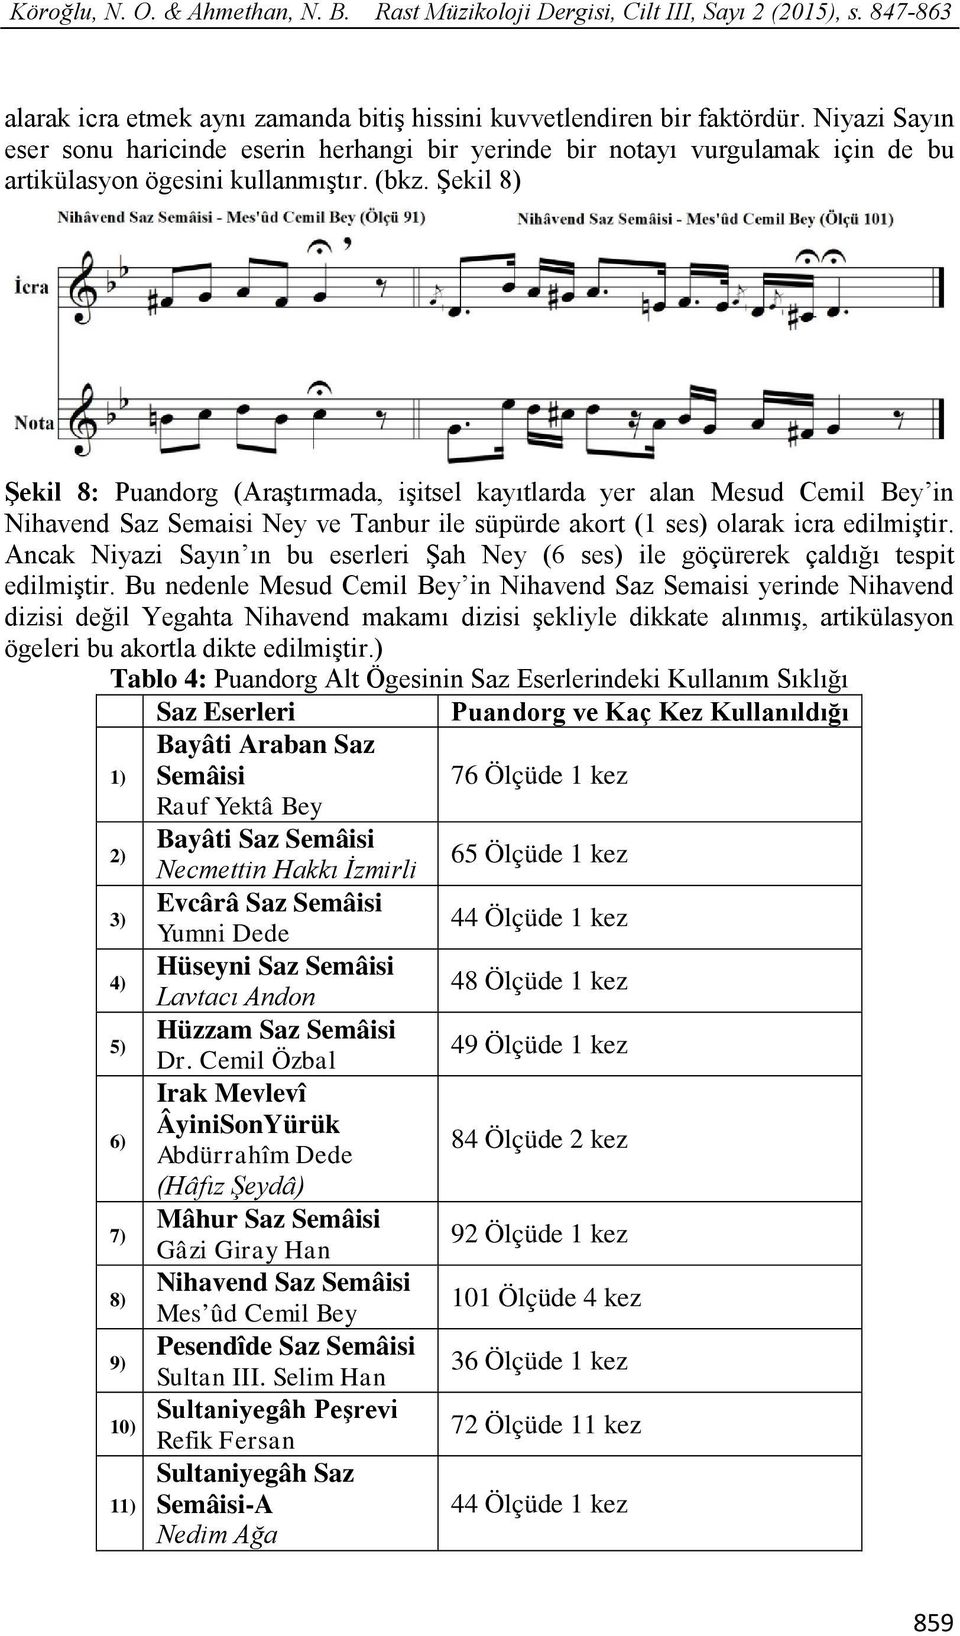 Şekil 8) Şekil 8: Puandorg (Araştırmada, işitsel kayıtlarda yer alan Mesud Cemil Bey in Nihavend Saz Semaisi Ney ve Tanbur ile süpürde akort (1 ses) olarak icra edilmiştir.